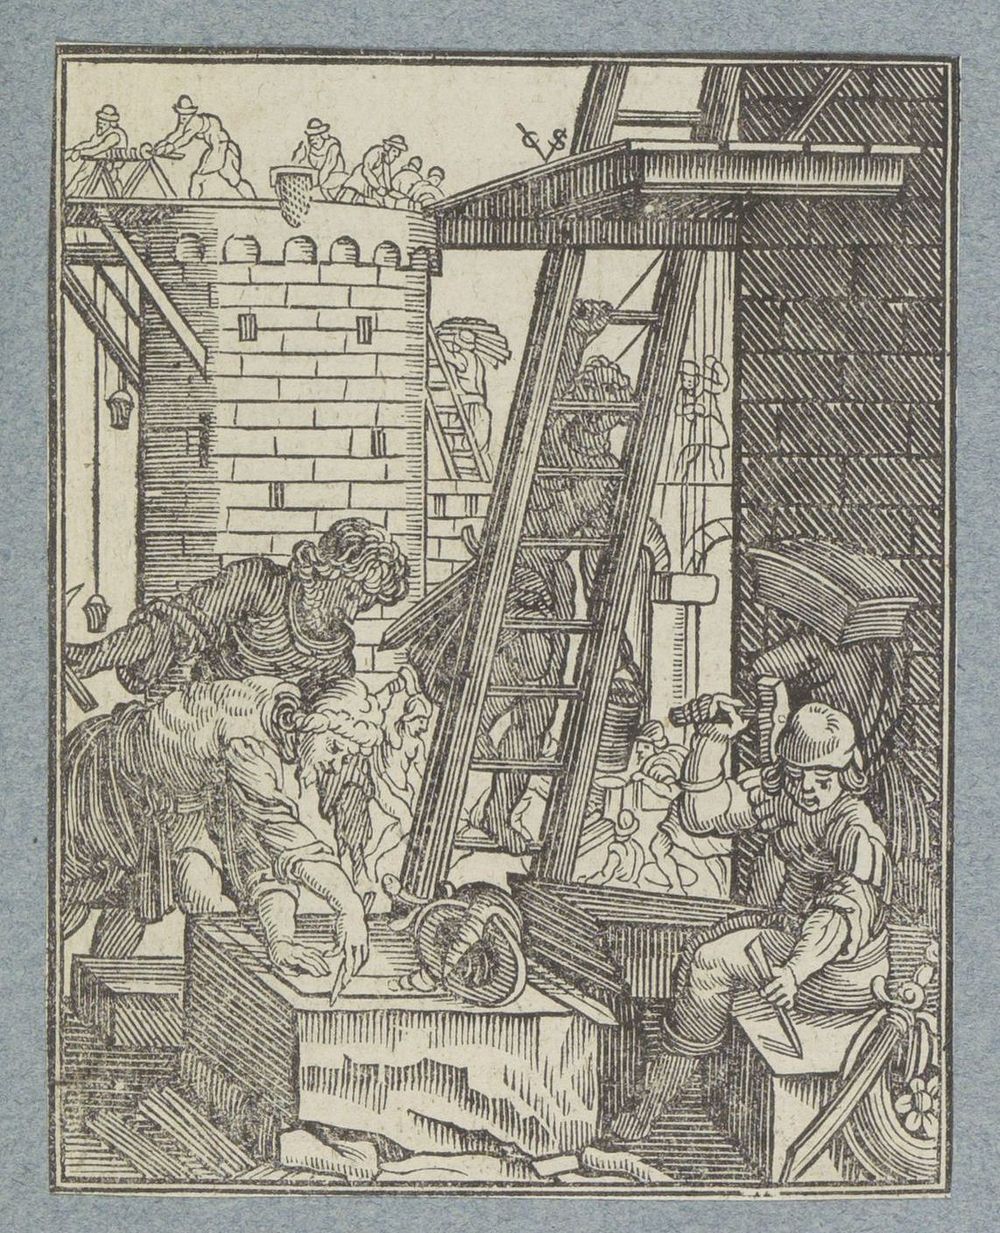 Bouwactiviteiten (1645 - 1646) by Christoffel van Sichem II, Christoffel van Sichem III and Pieter Jacobsz Paets